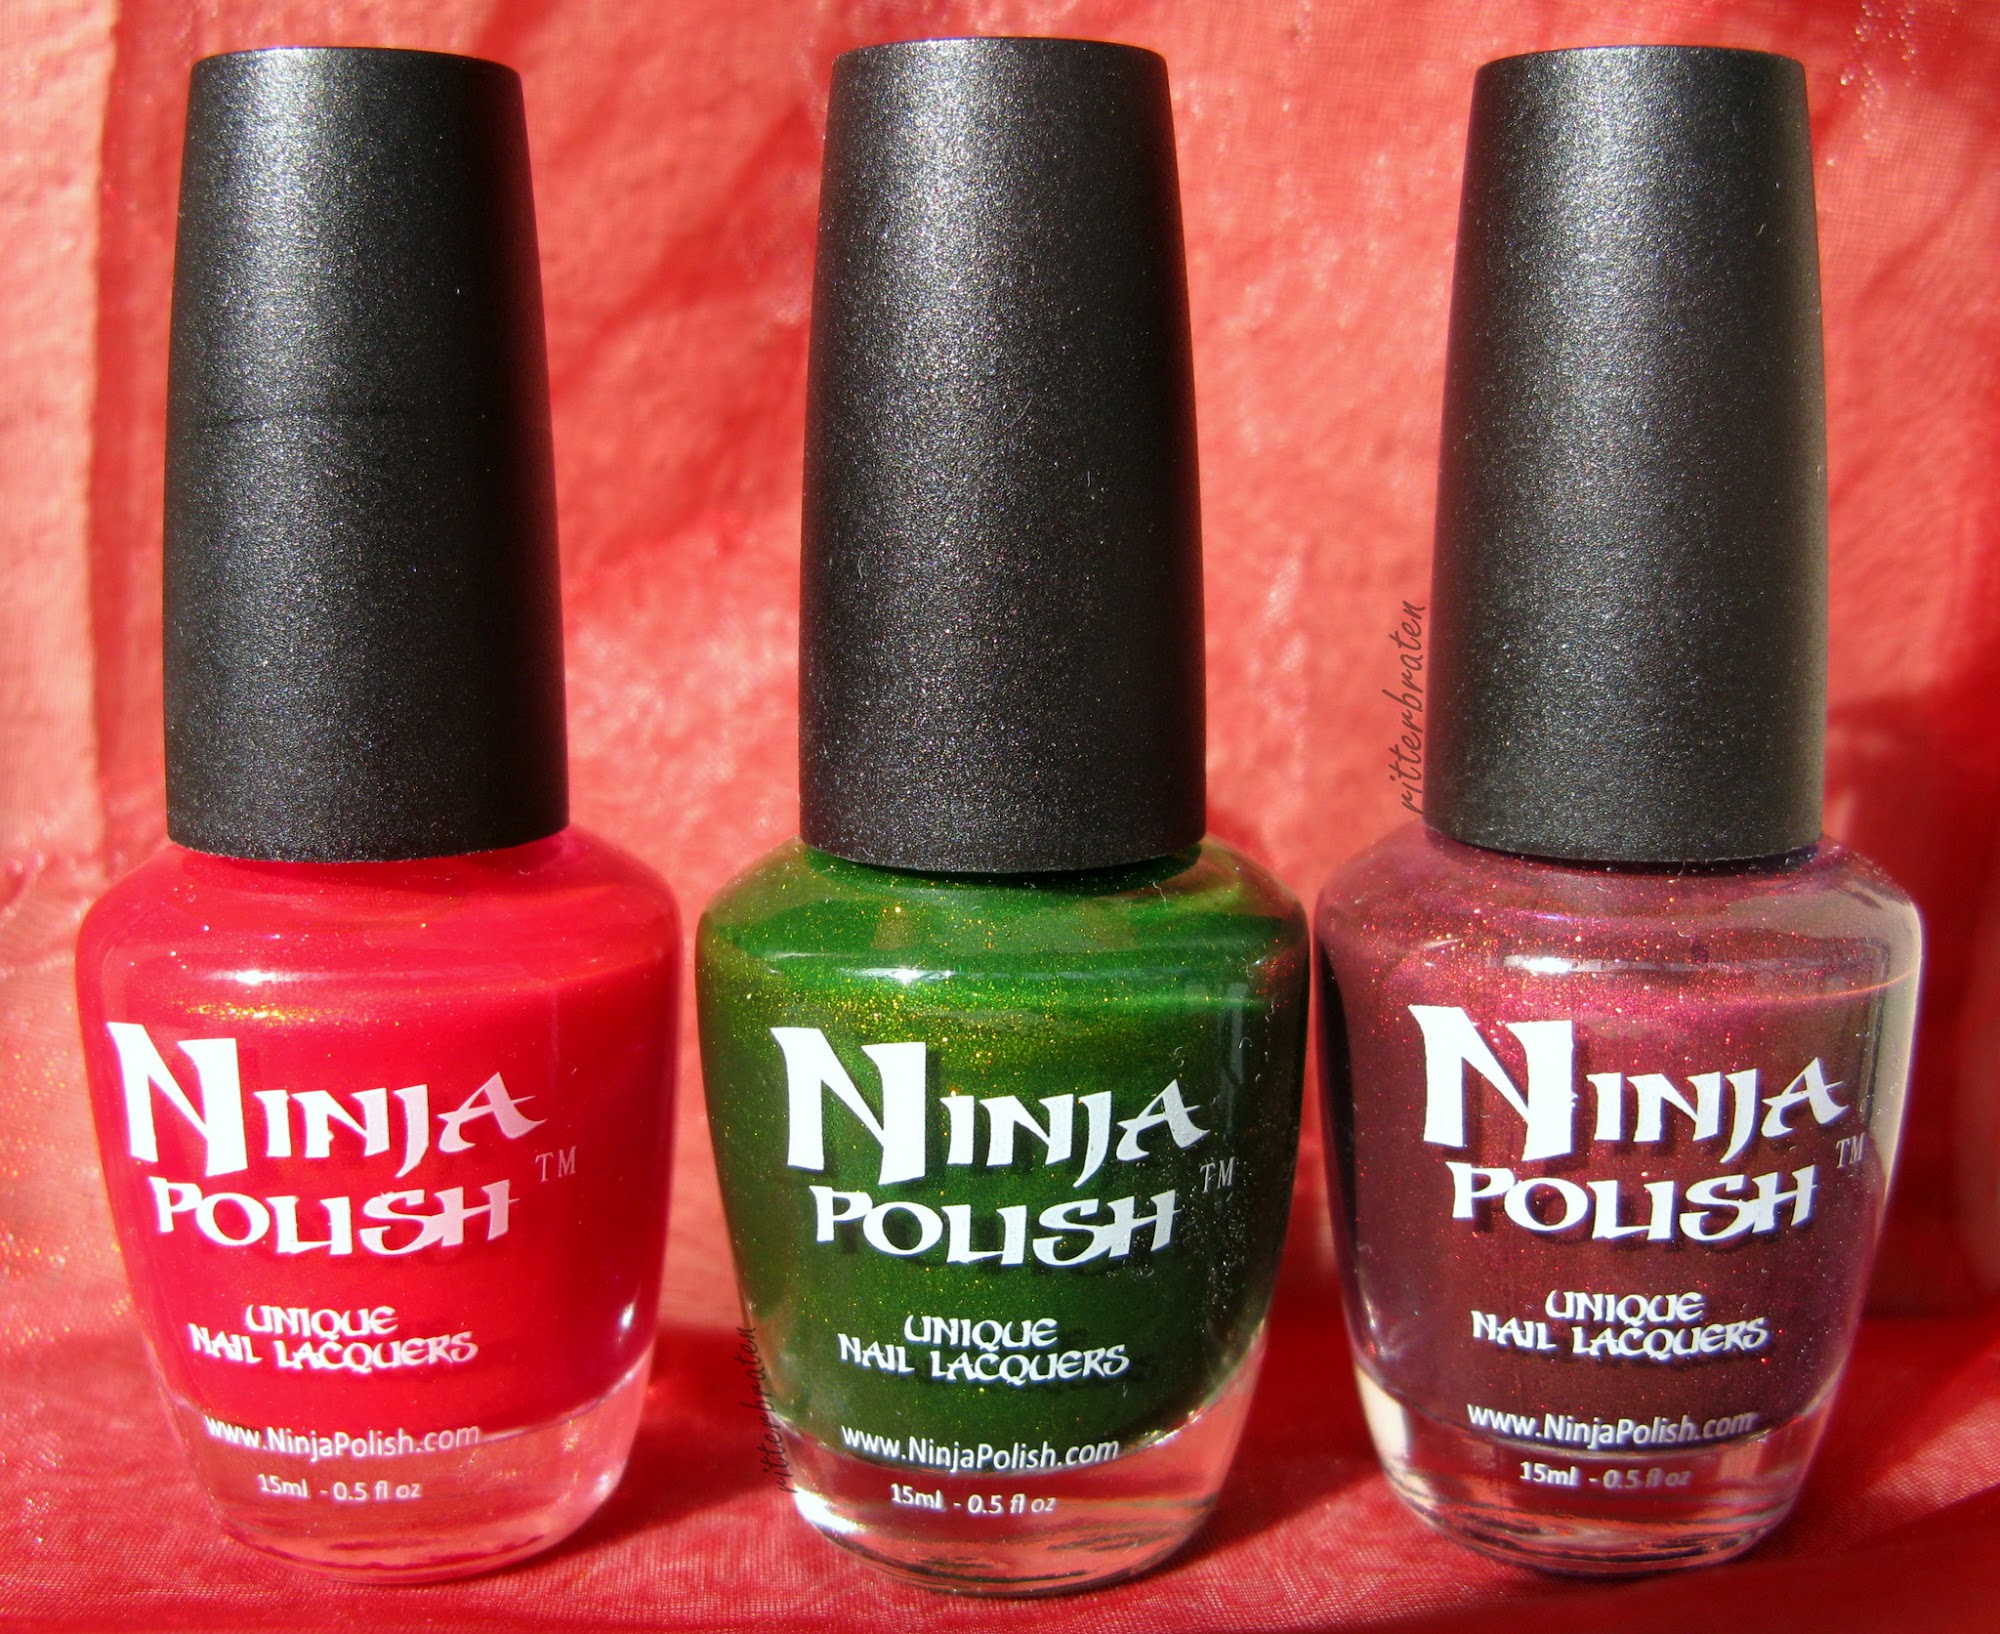 Ninja polish Enigma collection